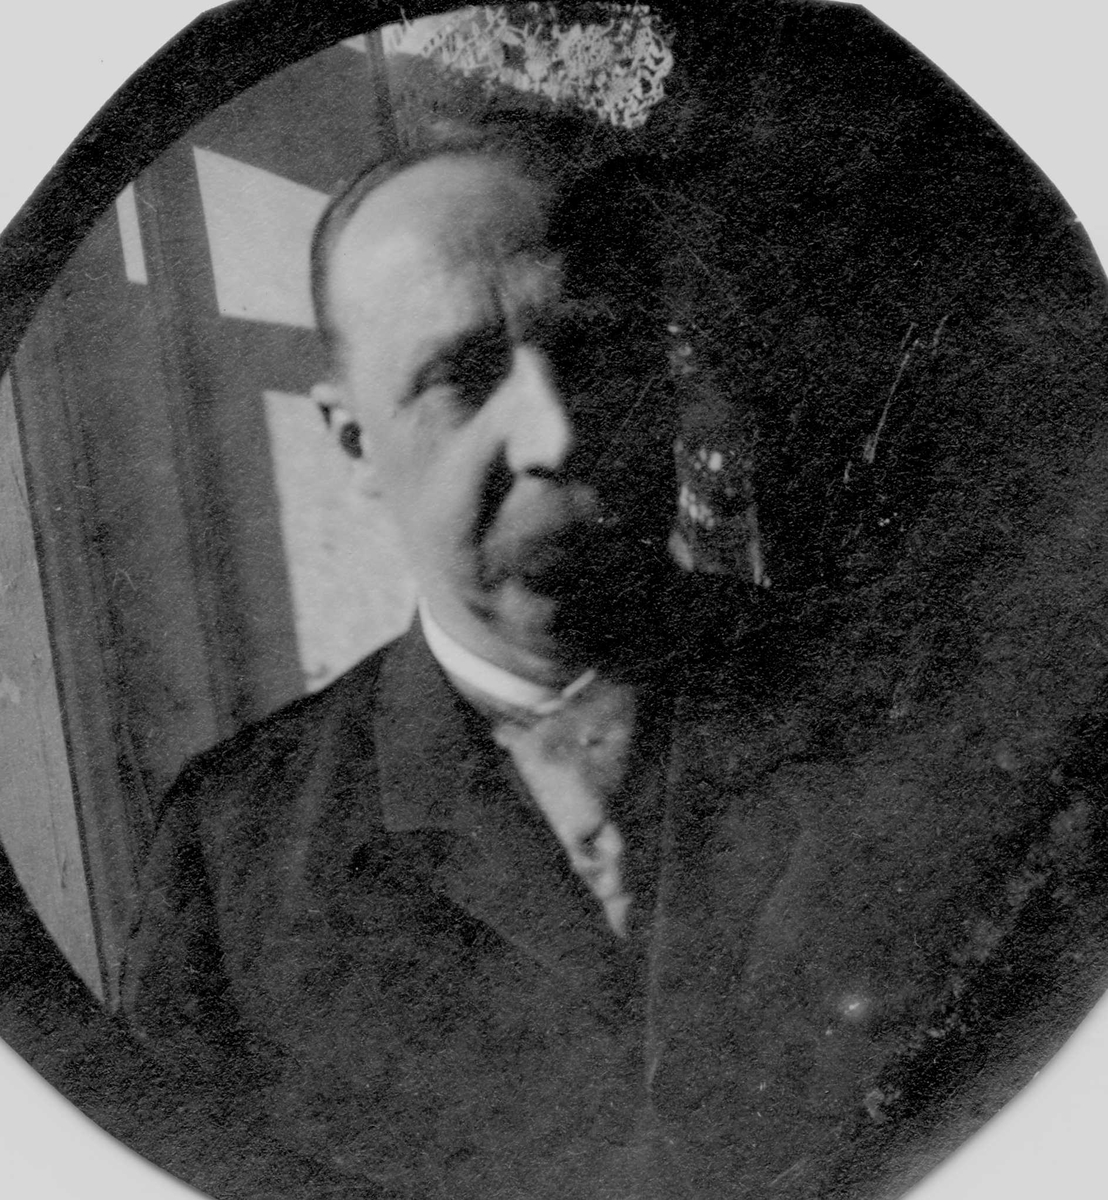 Portrett av fotografens far, apoteker G. L. Størmer.